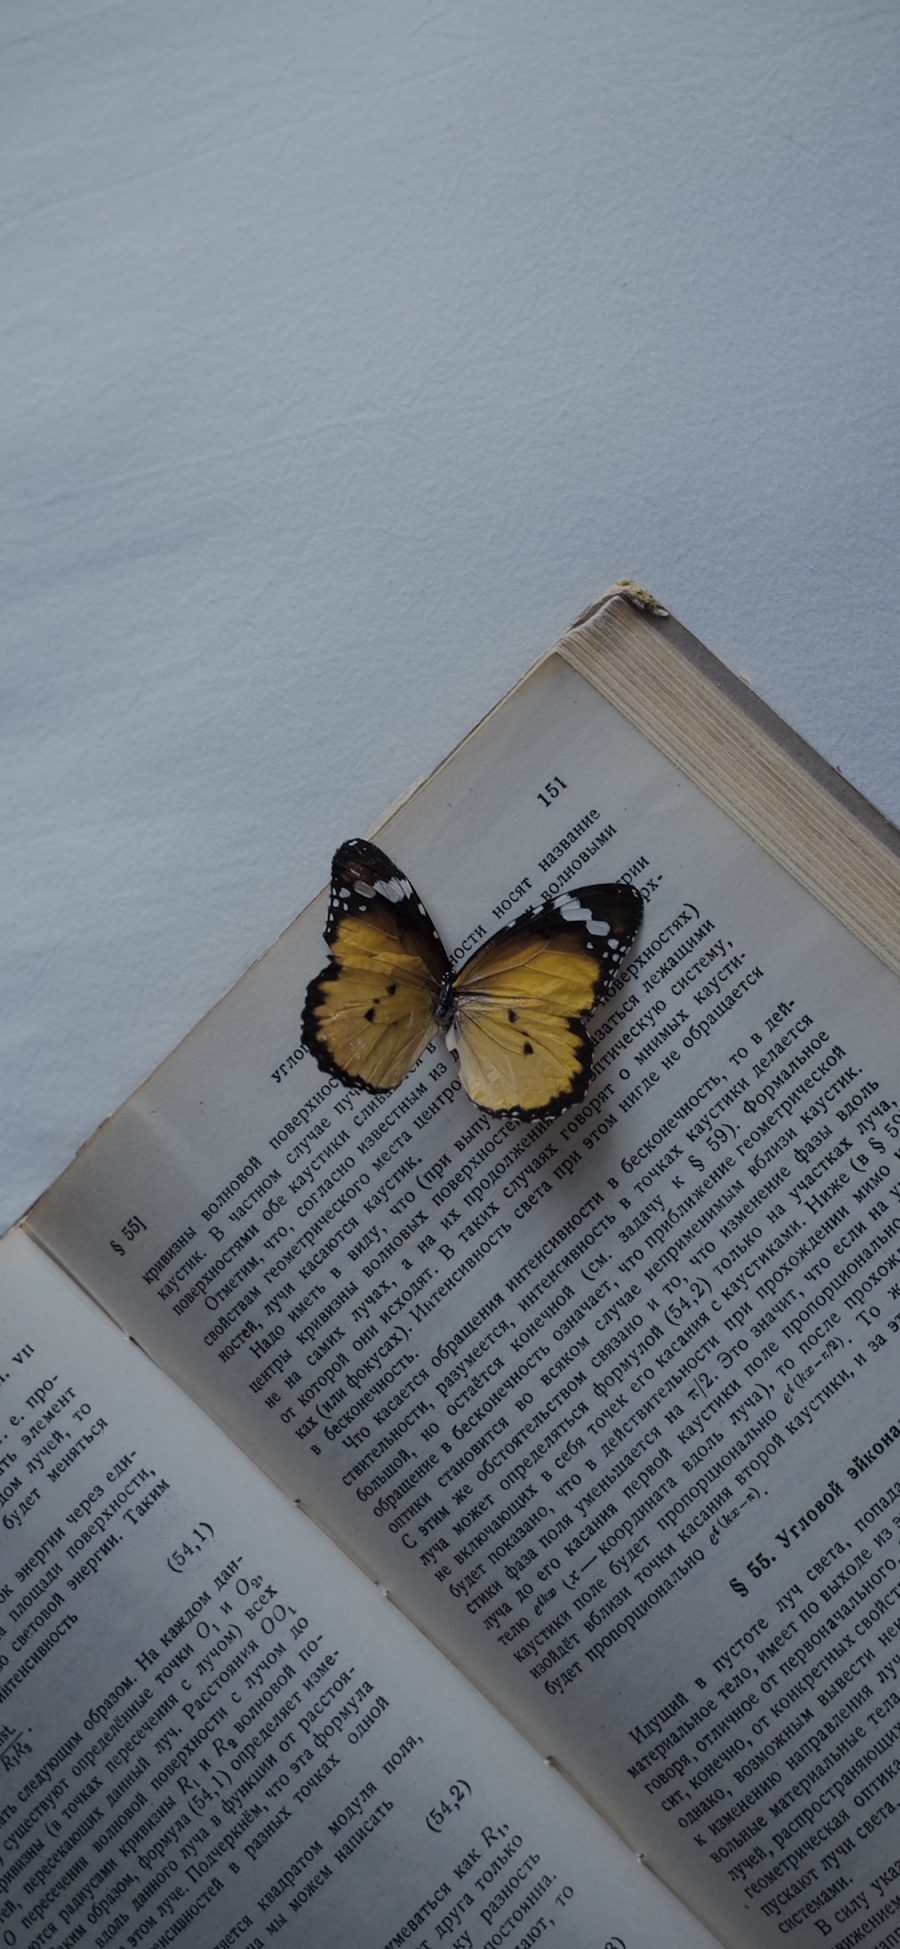 [2436×1125]蝴蝶 标本 翅膀 昆虫 书本 苹果手机壁纸图片